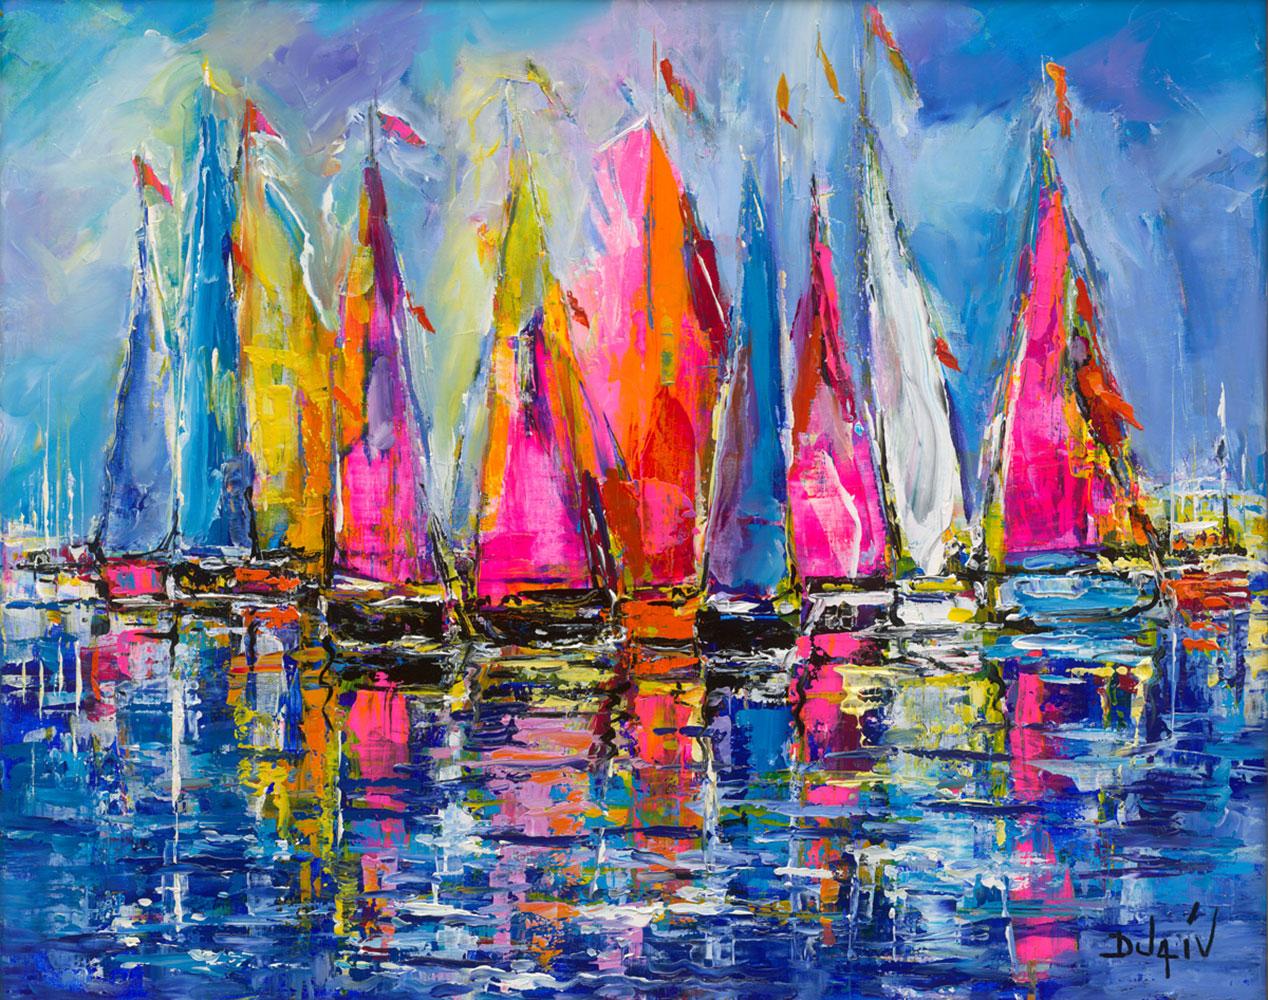 Duaiv * Sails of Colors * Original Oil On Linen 1